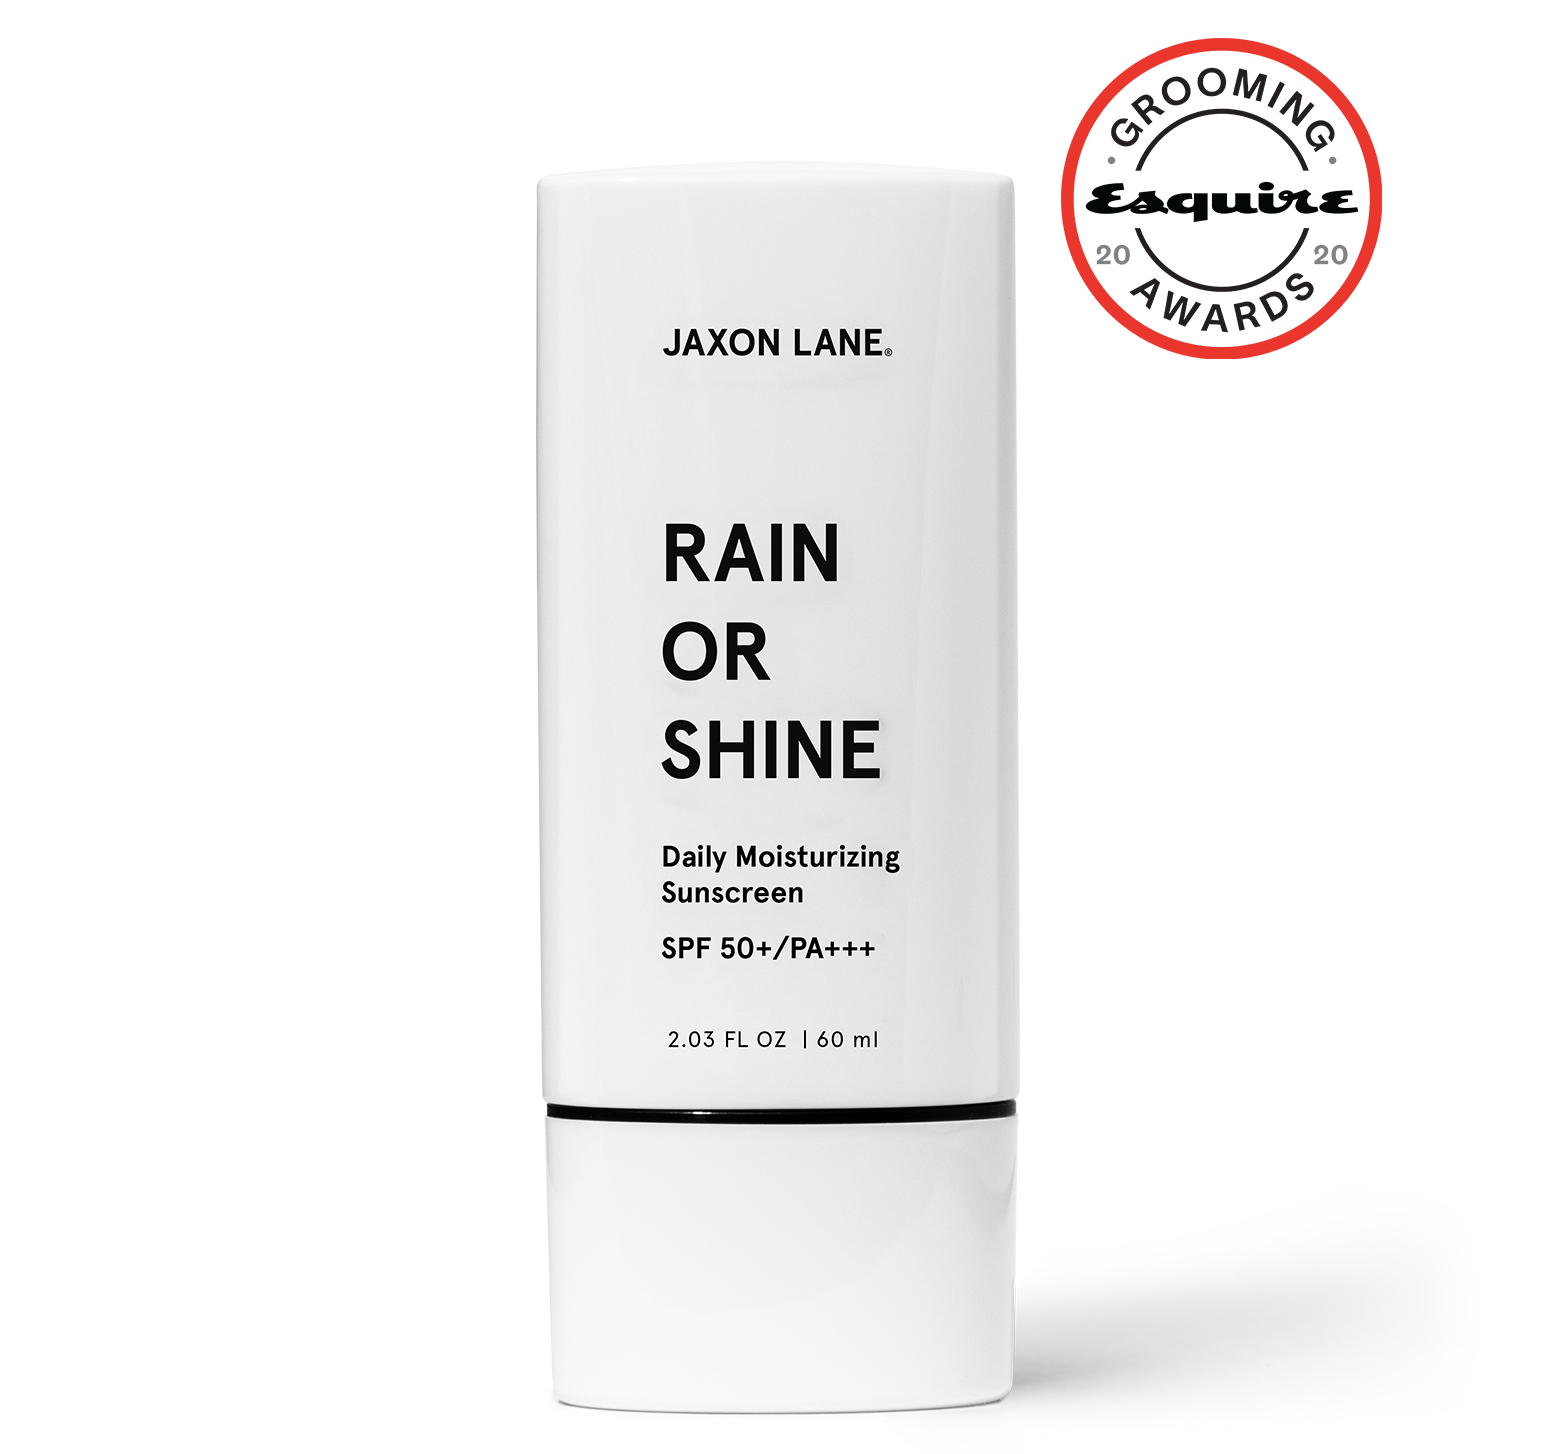 RAIN OR SHINE - Daily Moisturizing Sunscreen by JAXON LANE